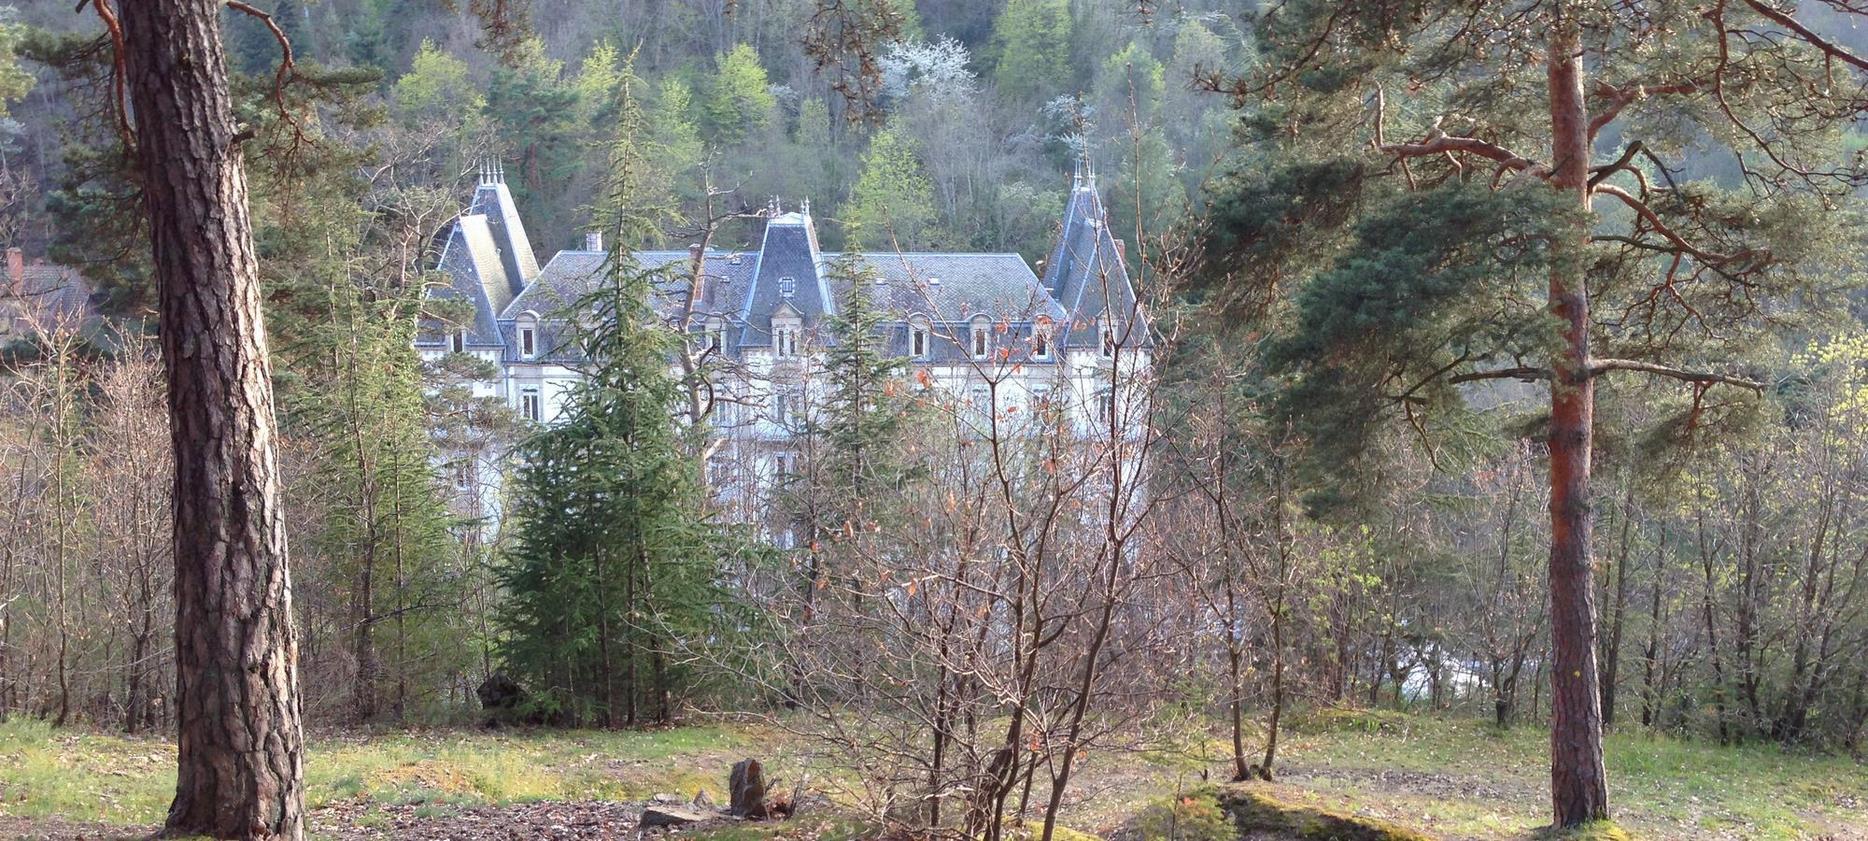 Saint Nectaire - village of Puy de Dôme - Massif central